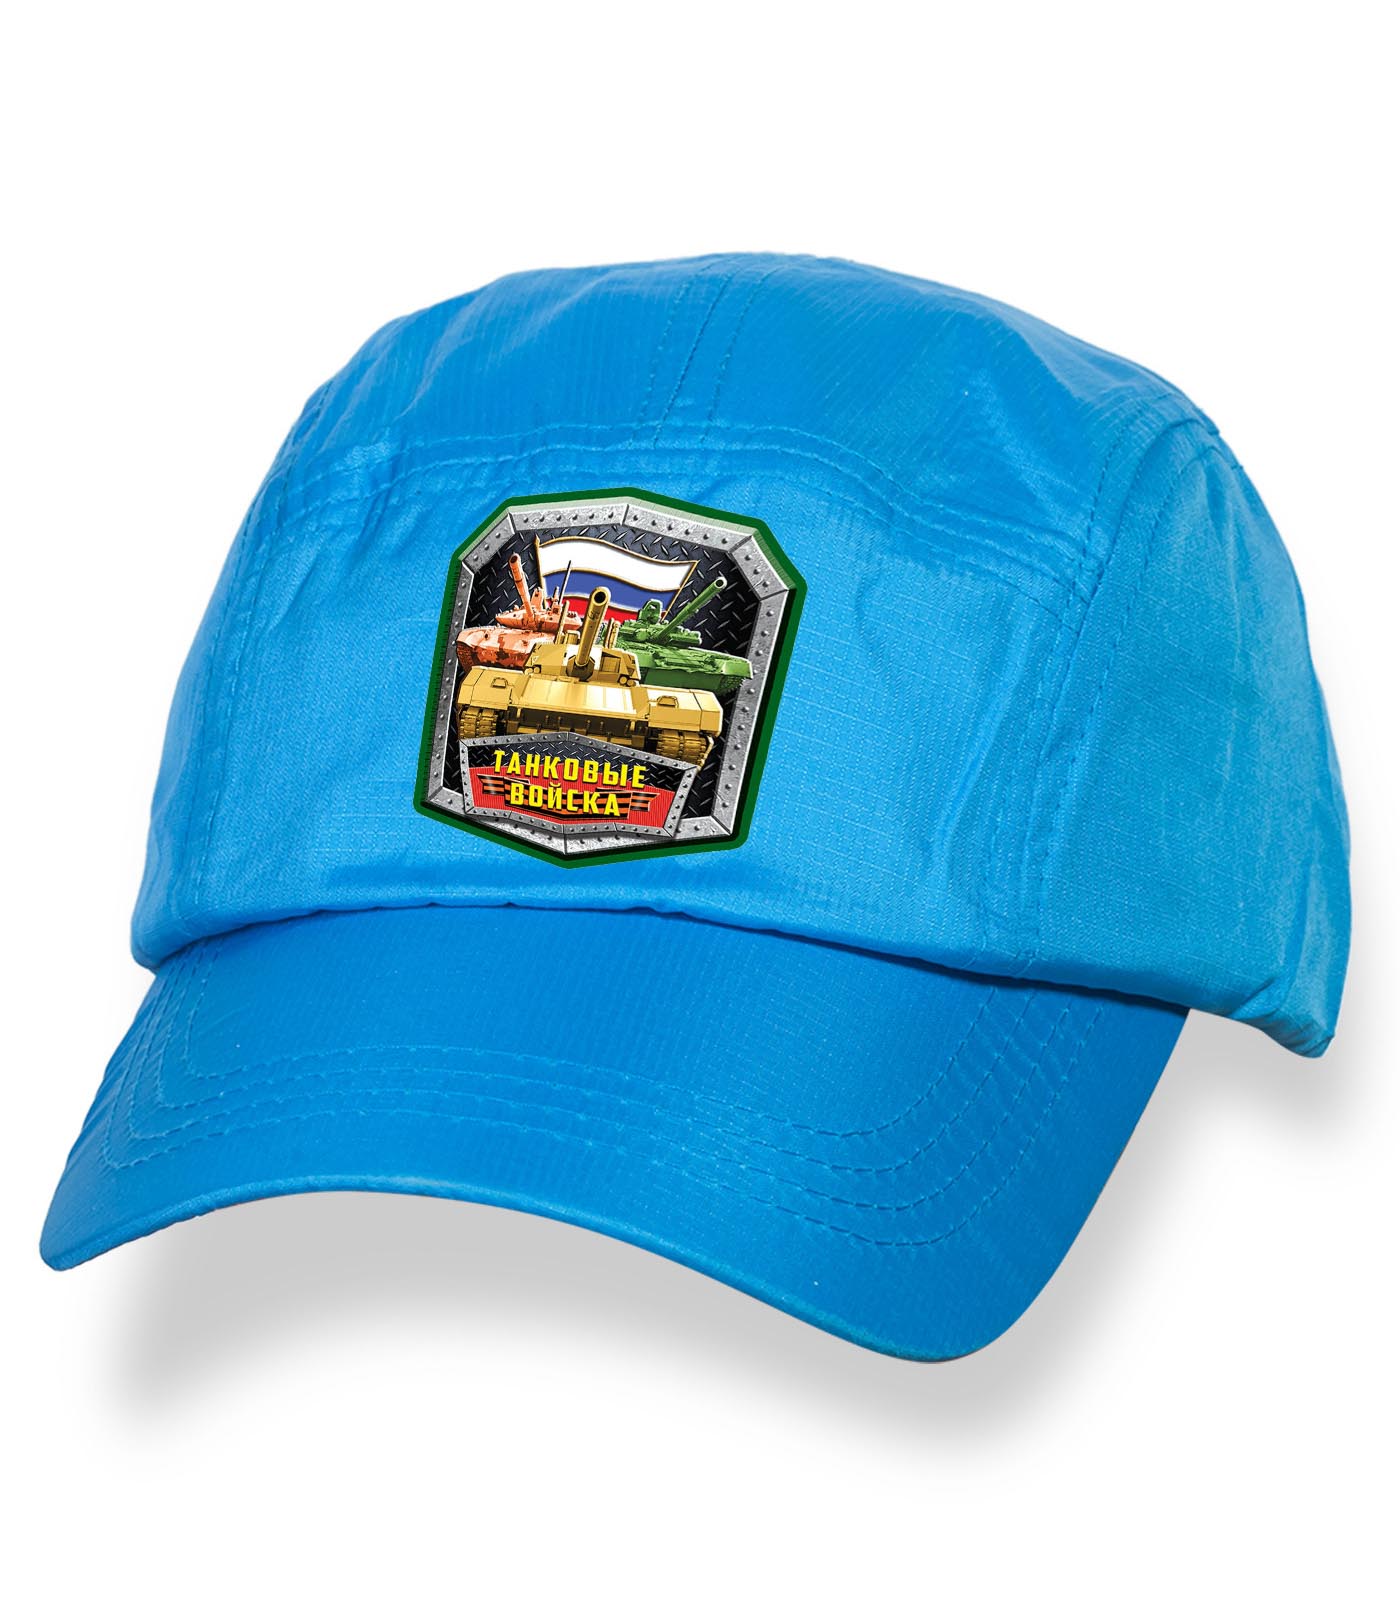 Купить голубую лаконичную кепку-пятипанельку с термонаклейкой Танковые Войска онлайн с доставкой